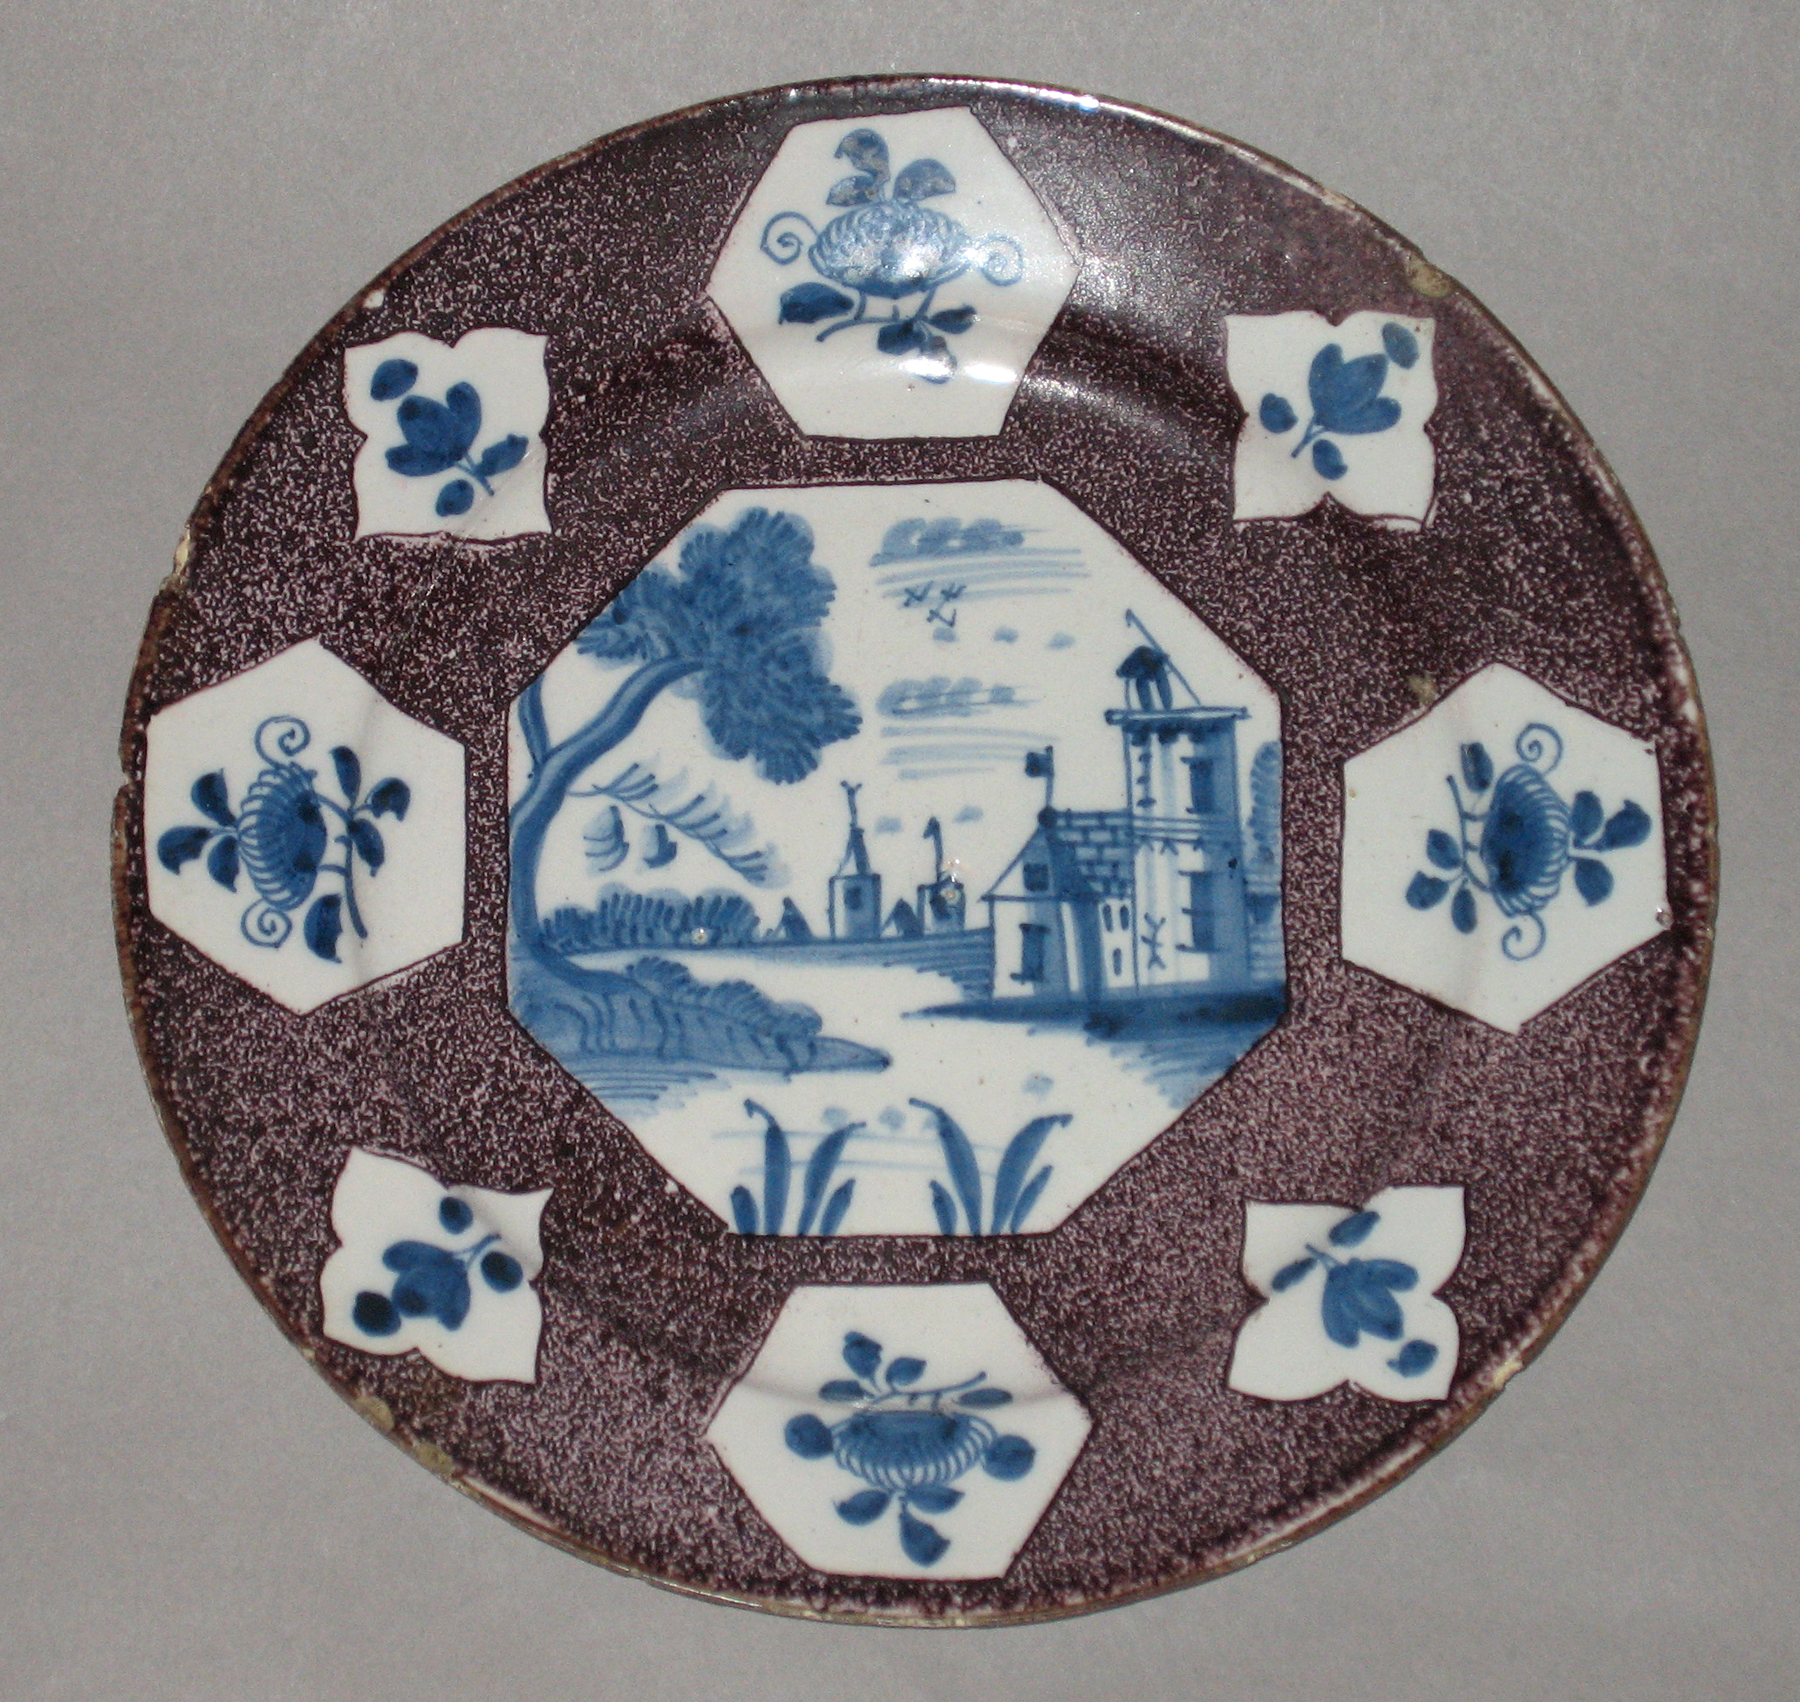 2003.0022.068 Delft plate